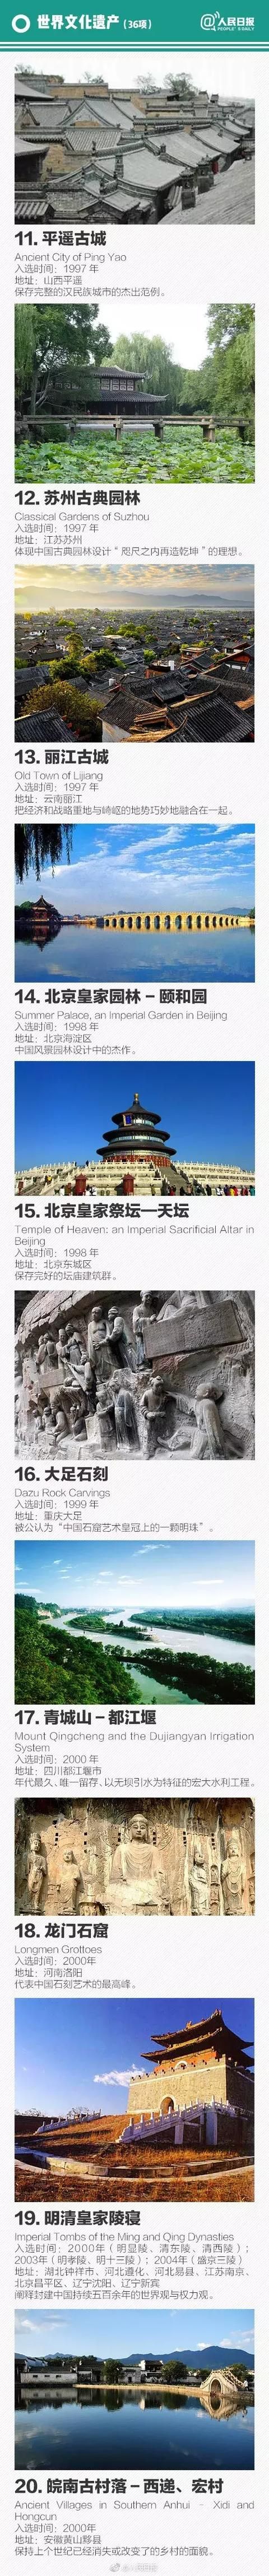 中国世界遗产名单